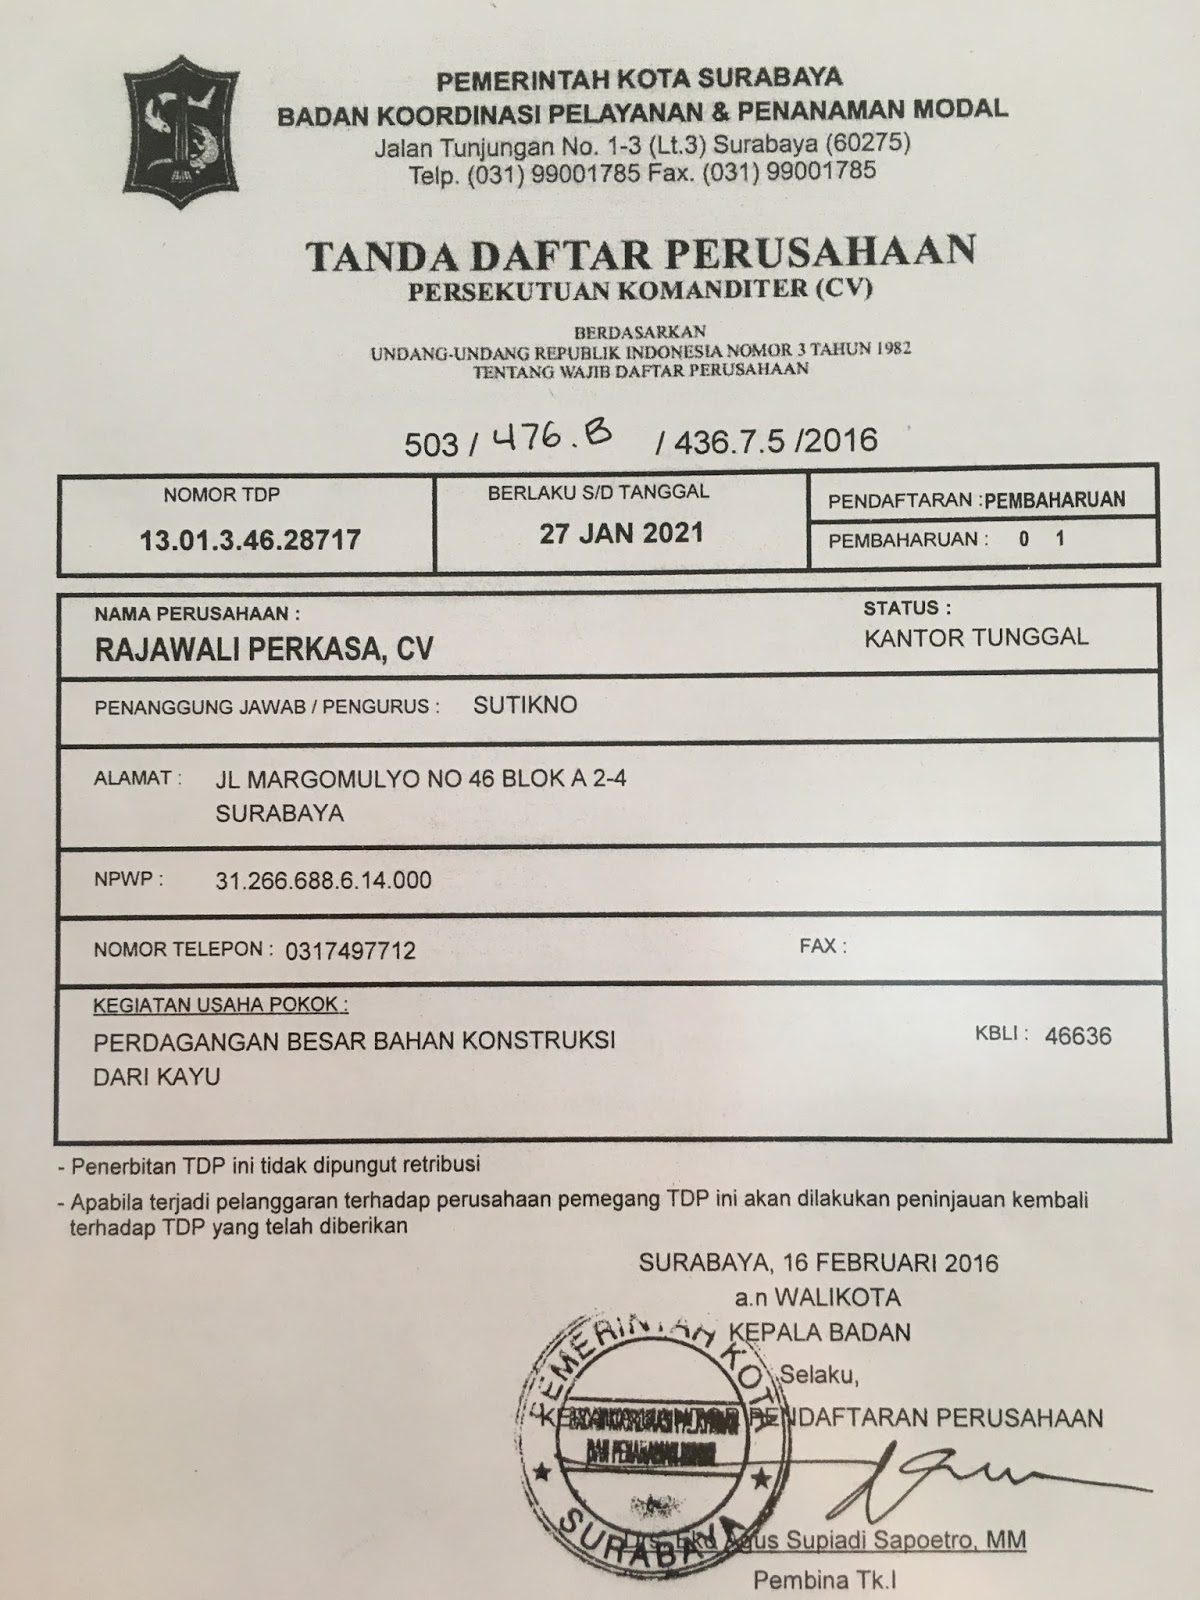 Triplek Surabaya: Legalitas Perusahaan CV Rajawali Perkasa